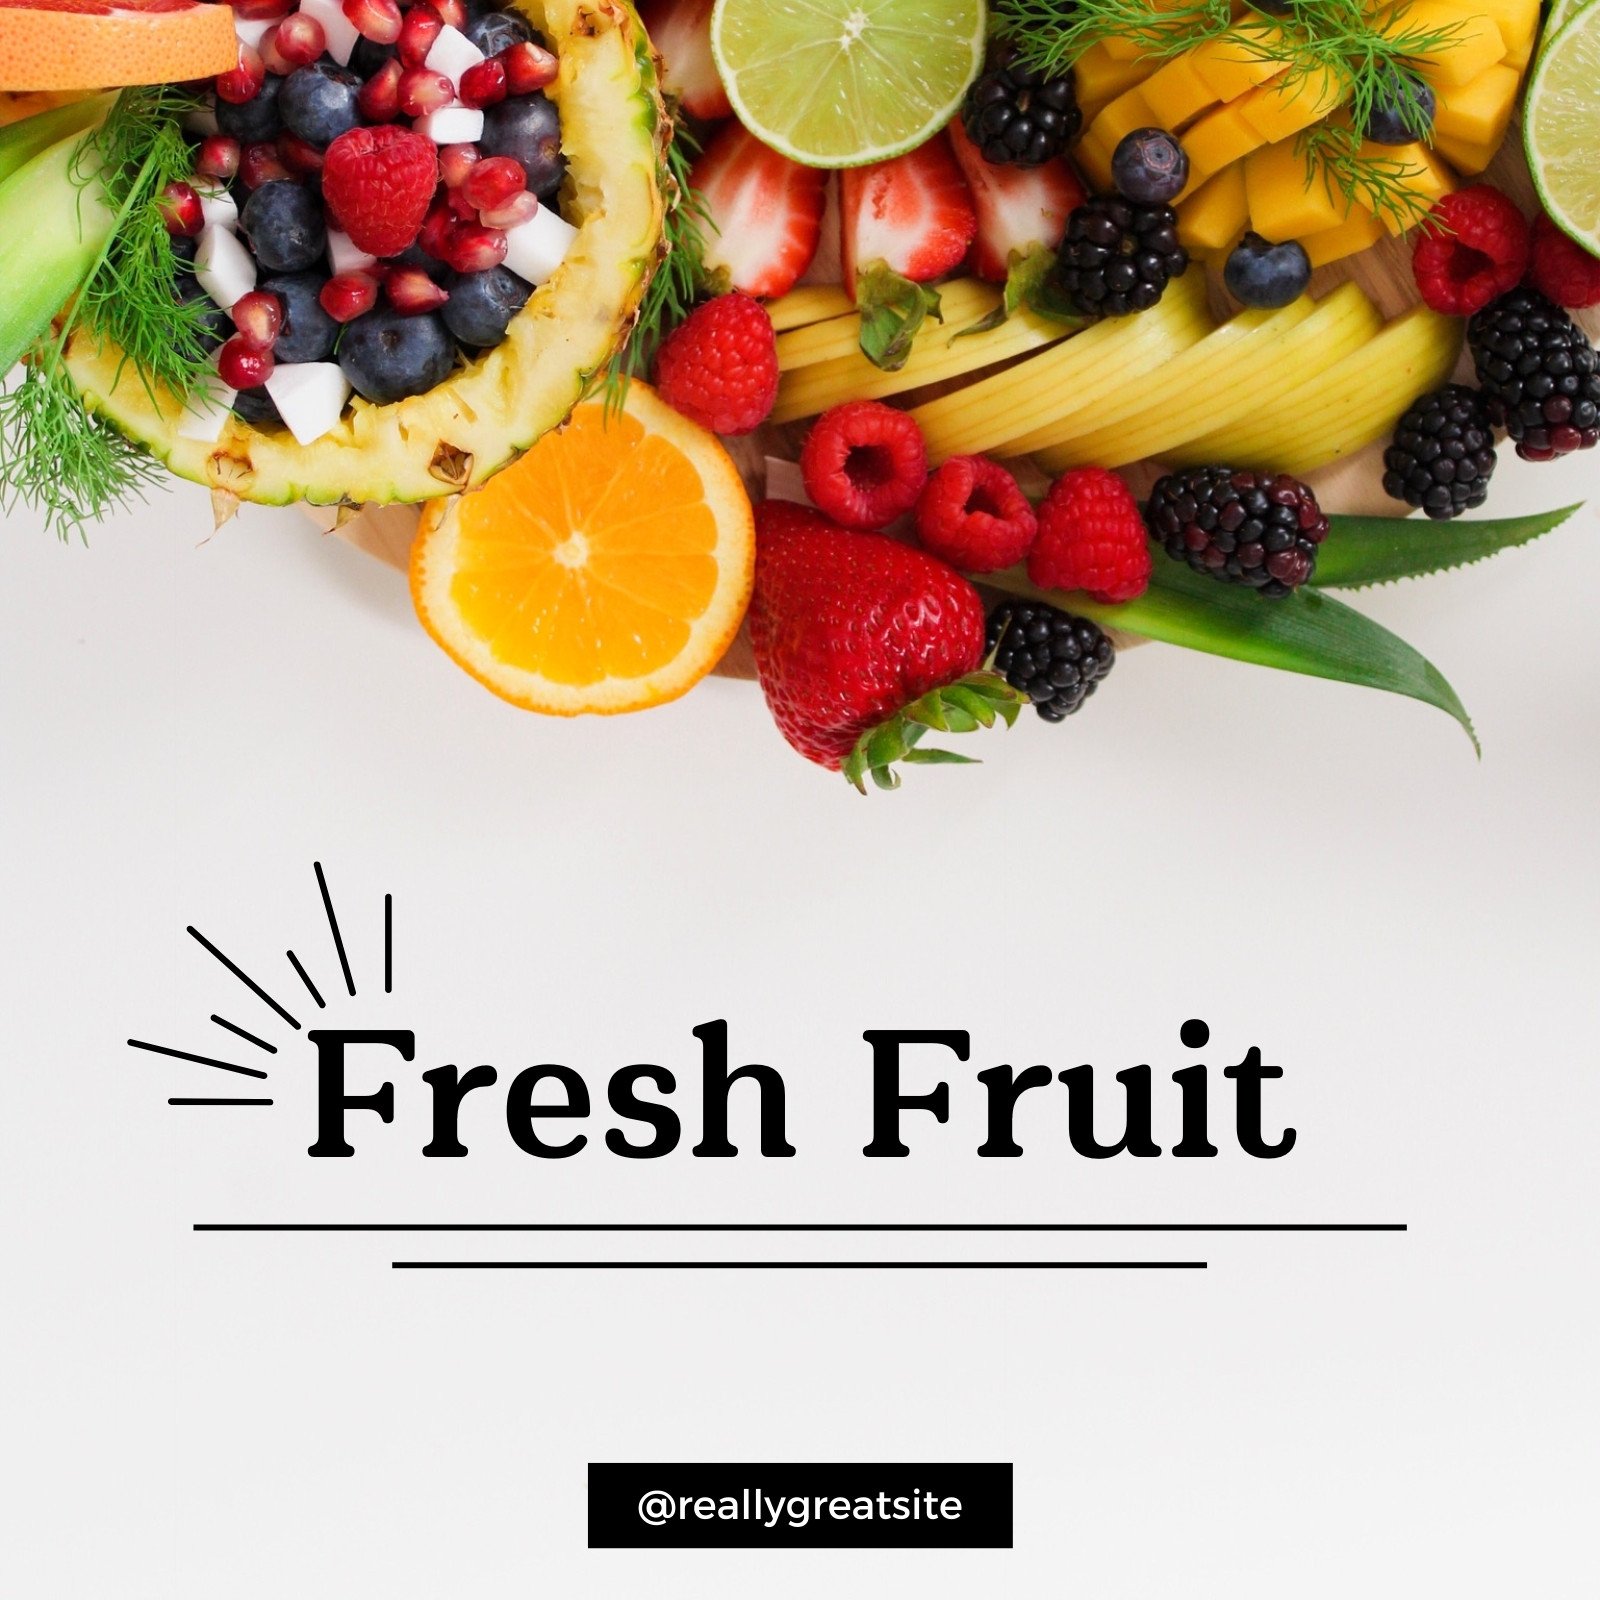 https://marketplace.canva.com/EAFMoNgBHE8/1/0/1600w/canva-white-fresh-fruit-instagram-post-i19D8Jv5Ab0.jpg